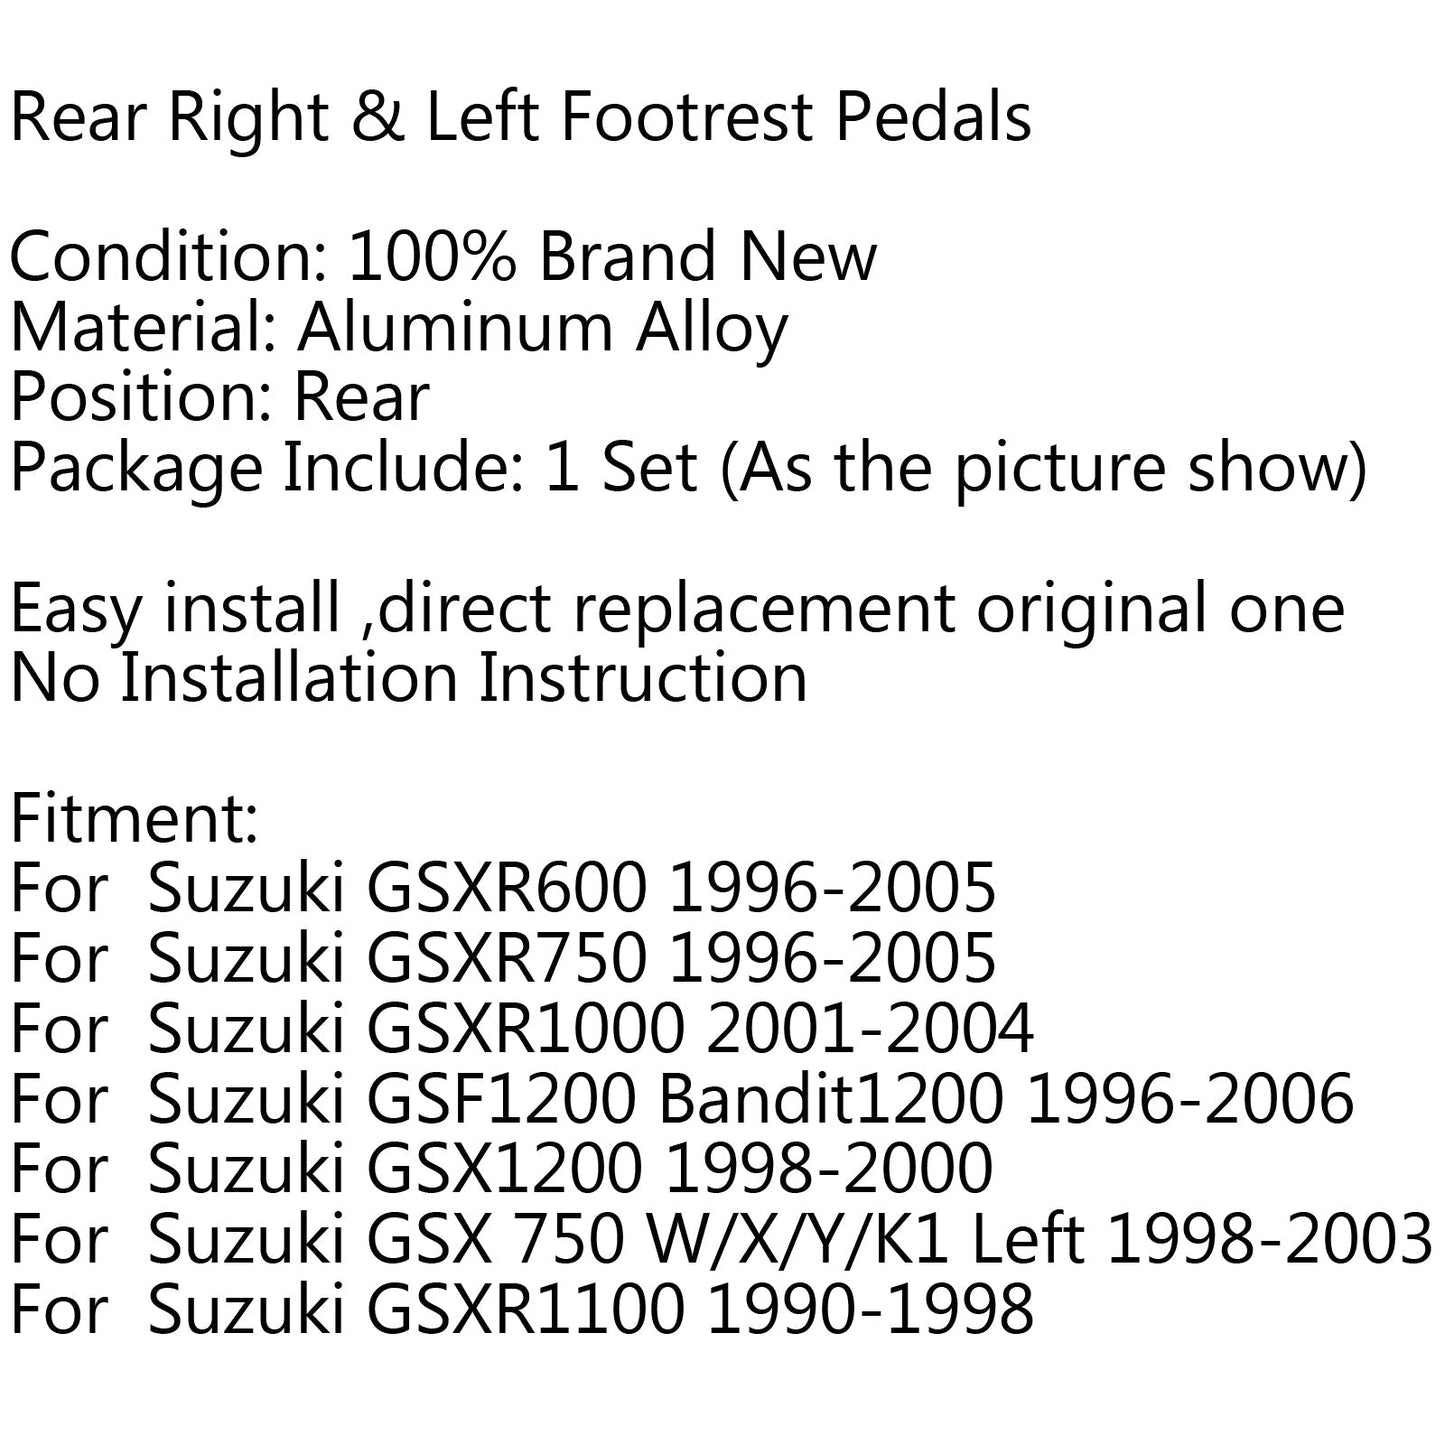 F/R Poggiapiedi Pedali Pedane Per Suzuki GSXR600 GSX-R GSX 750 1000 GSF600 Generico